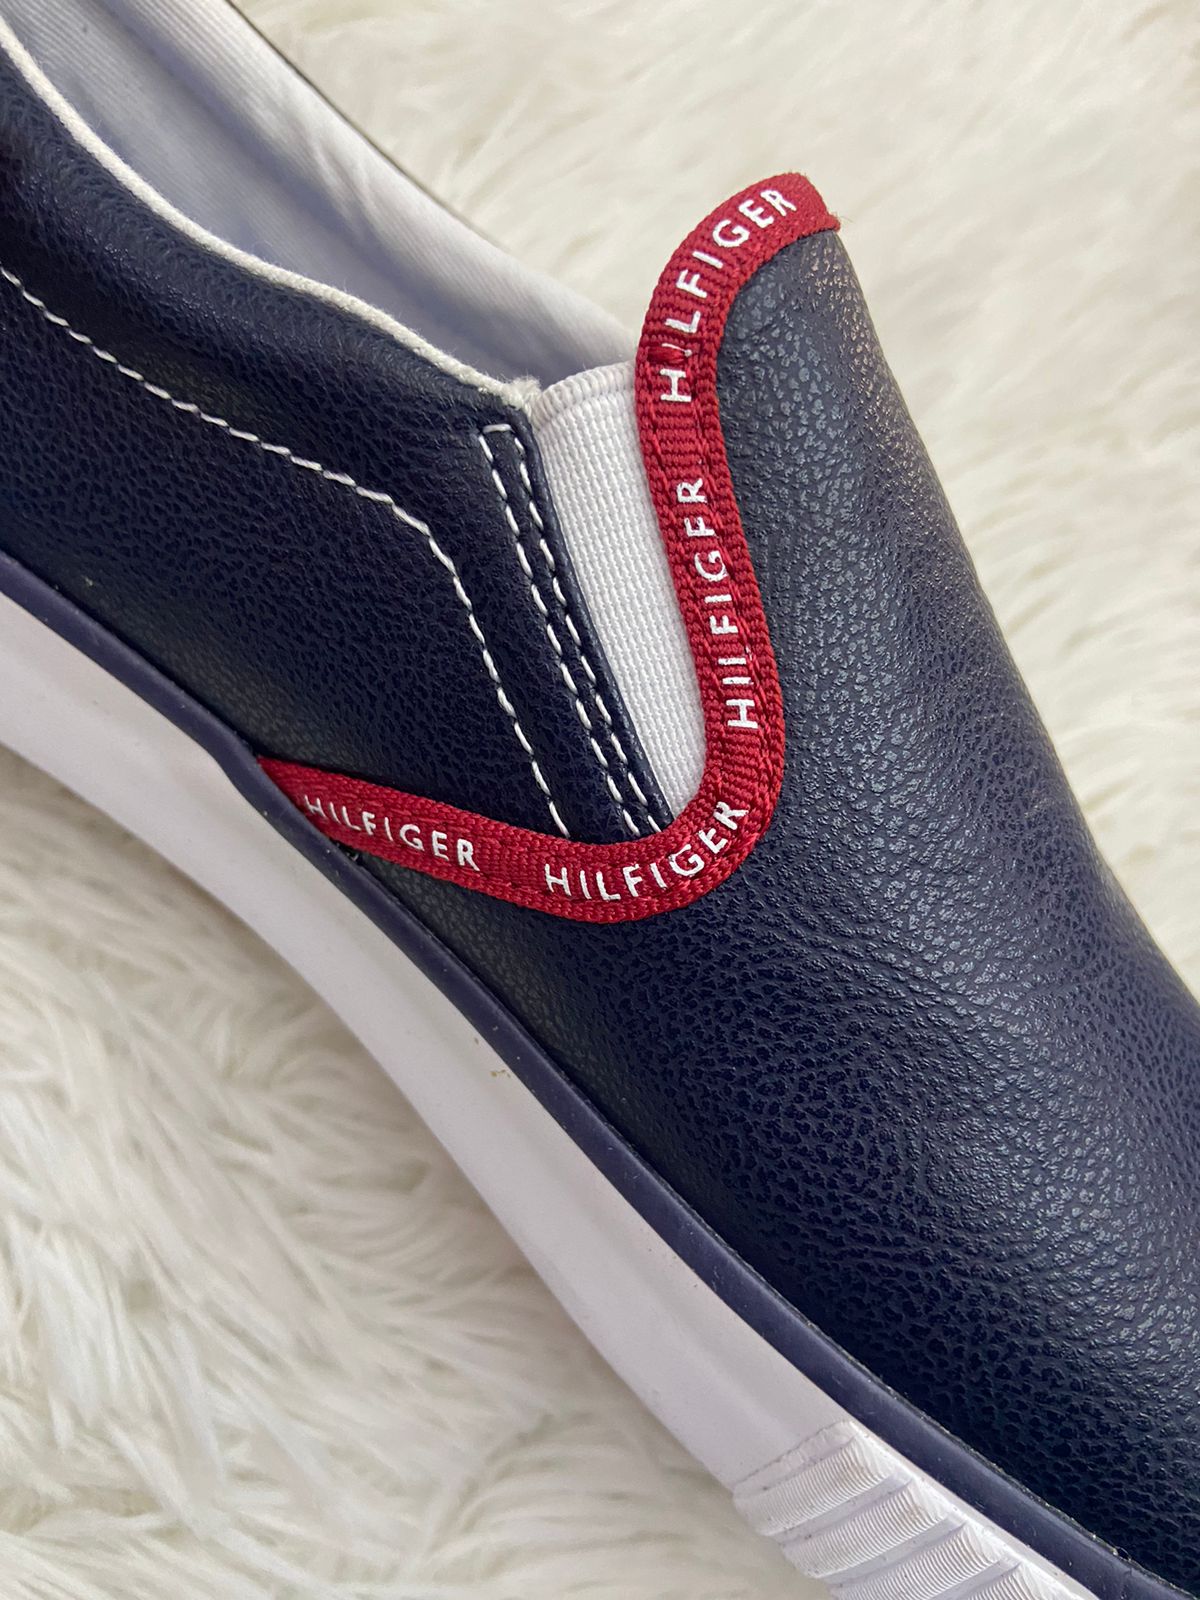 Alpargatas/ Tenis Tommy Hilfiger original azul marino con línea en color rojo y letras  HILFIGER en blanco.